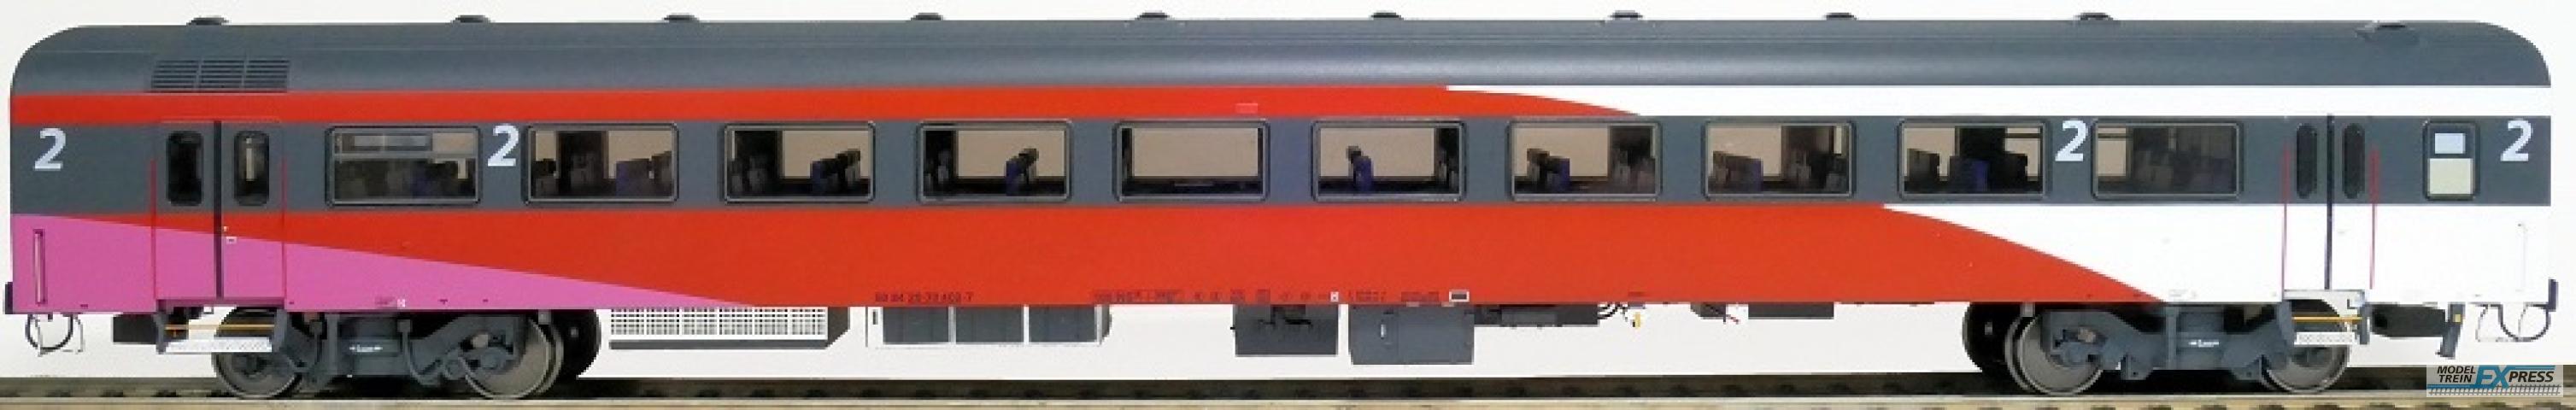 Exact-train 11140 NS ICRm Fyra 1 (Amsterdam - Brussel) für die Hsl-Strecke eingesetzt Endwagen B(Weiss/Rot/Rose), Ep. VI